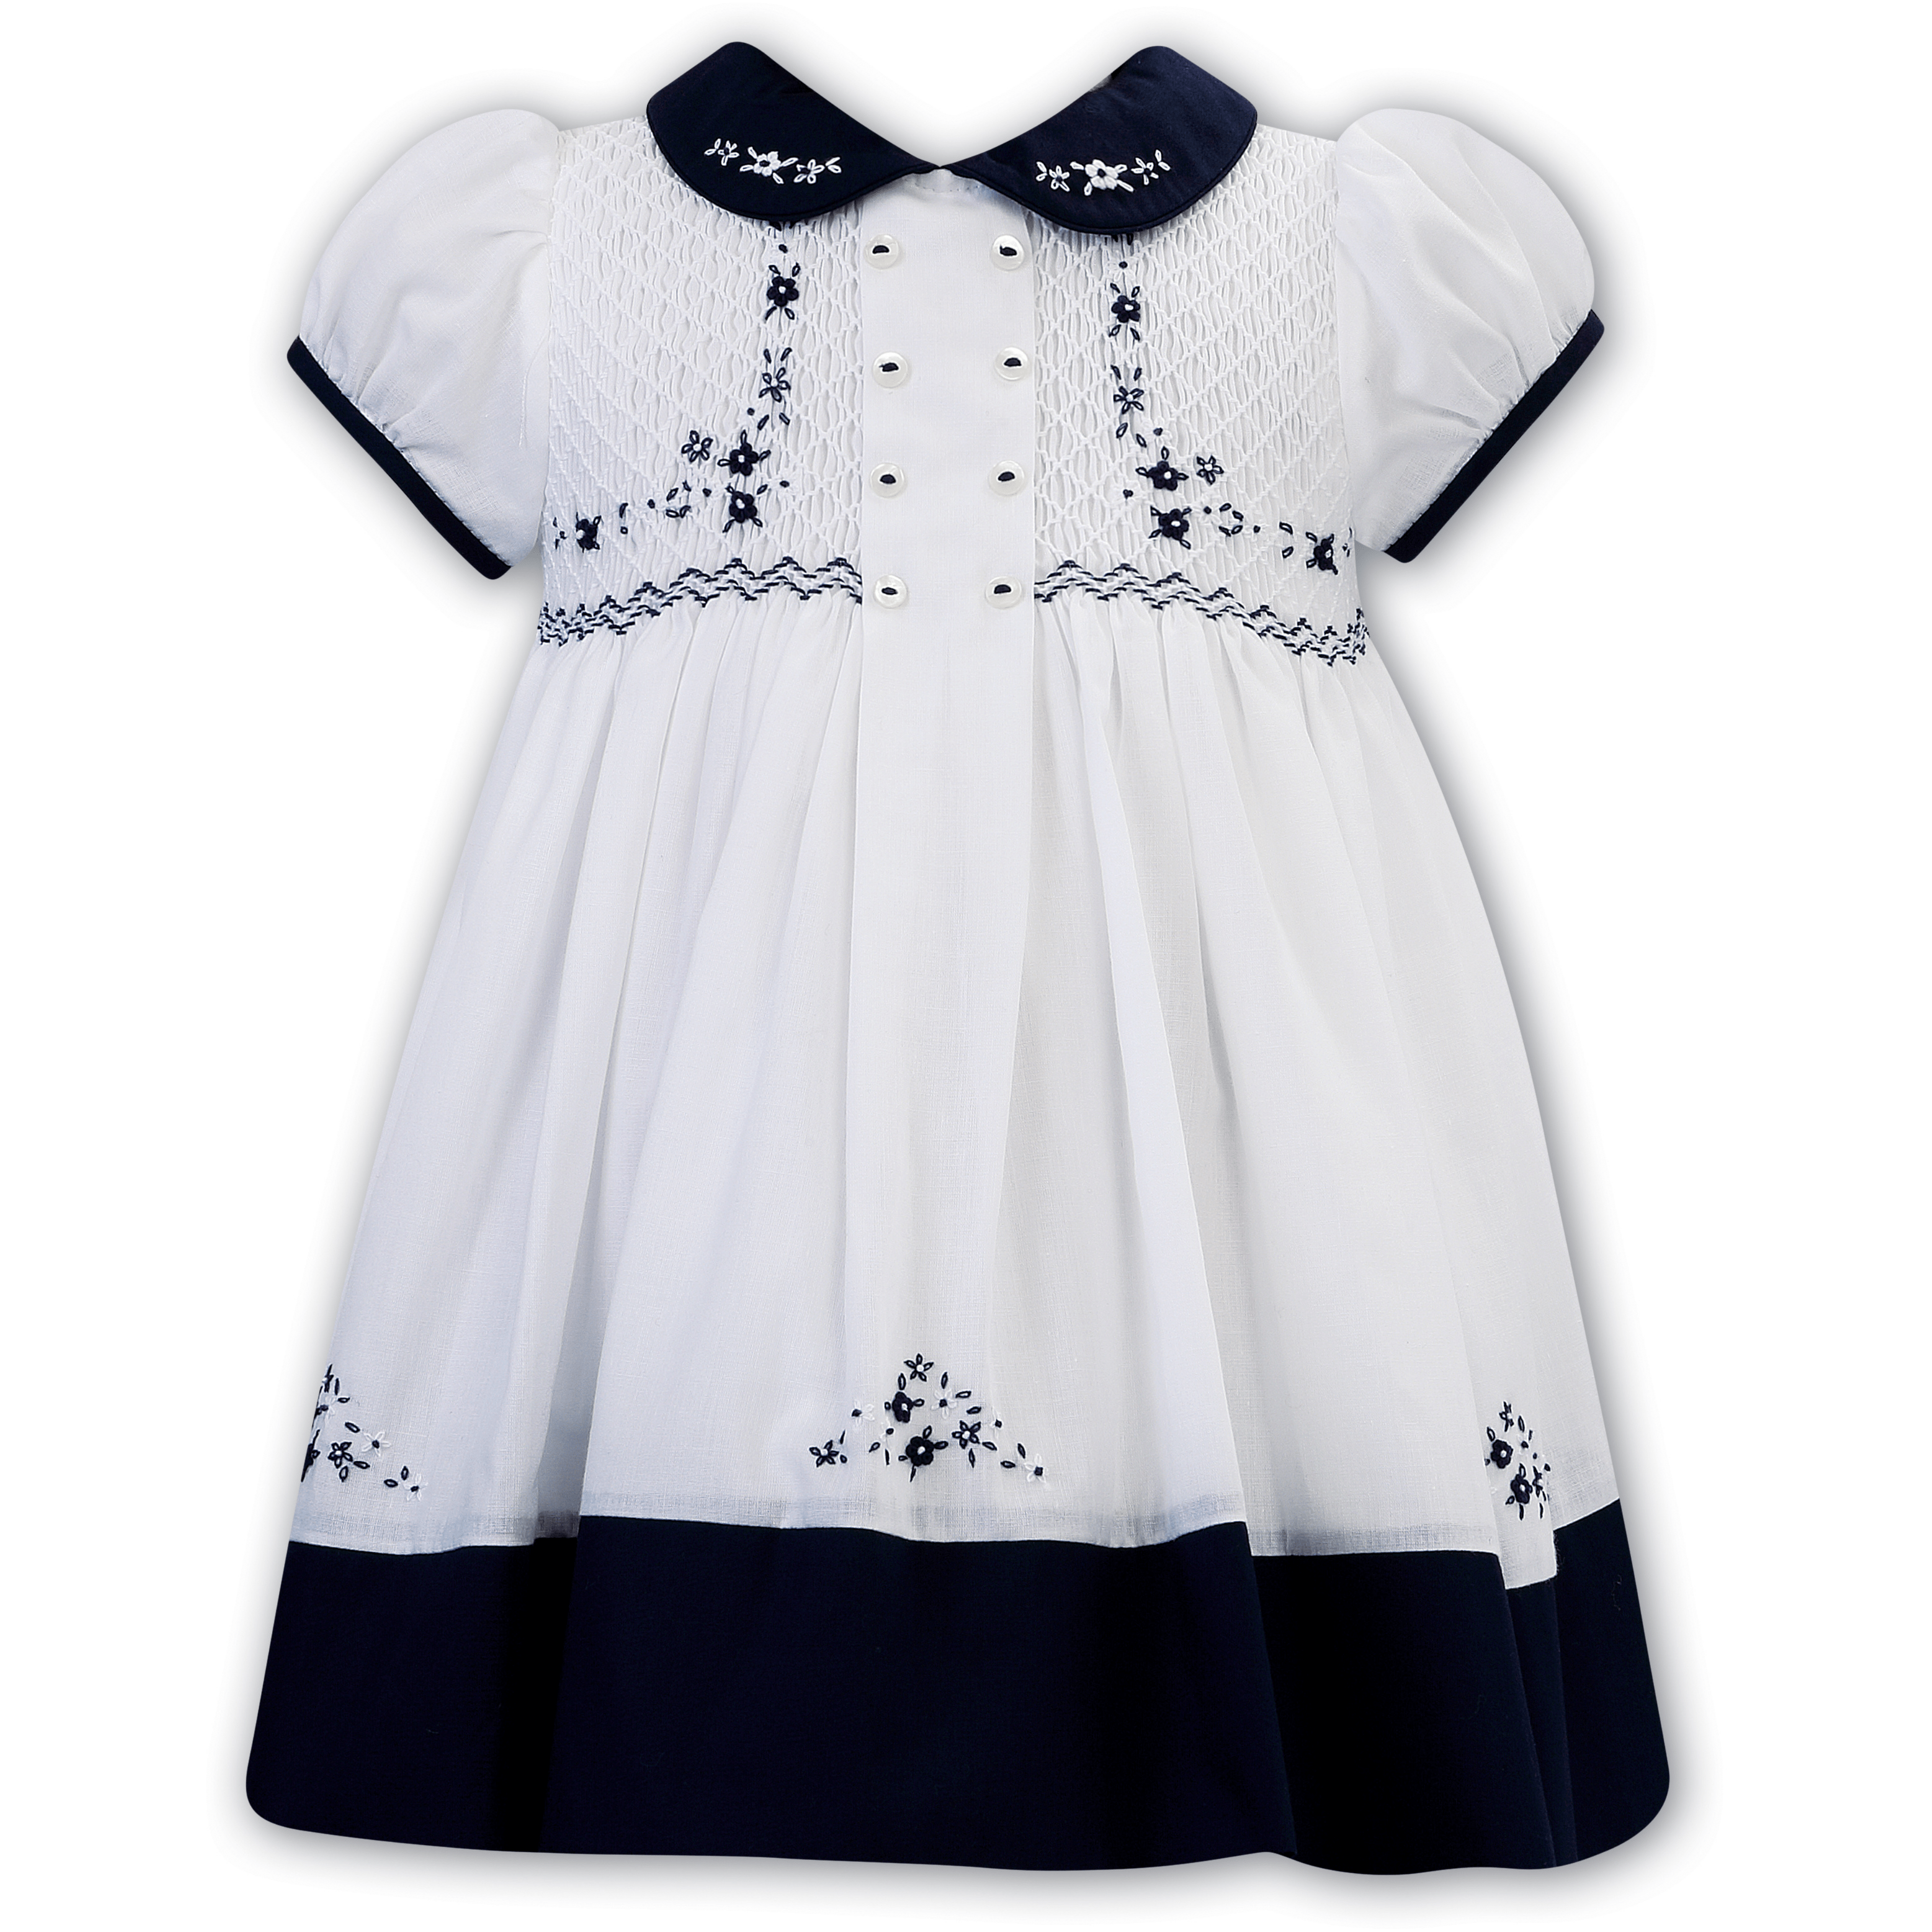 SARAH LOUISE - Peter Pan Collar Embroidered Button Smock Dress - Navy